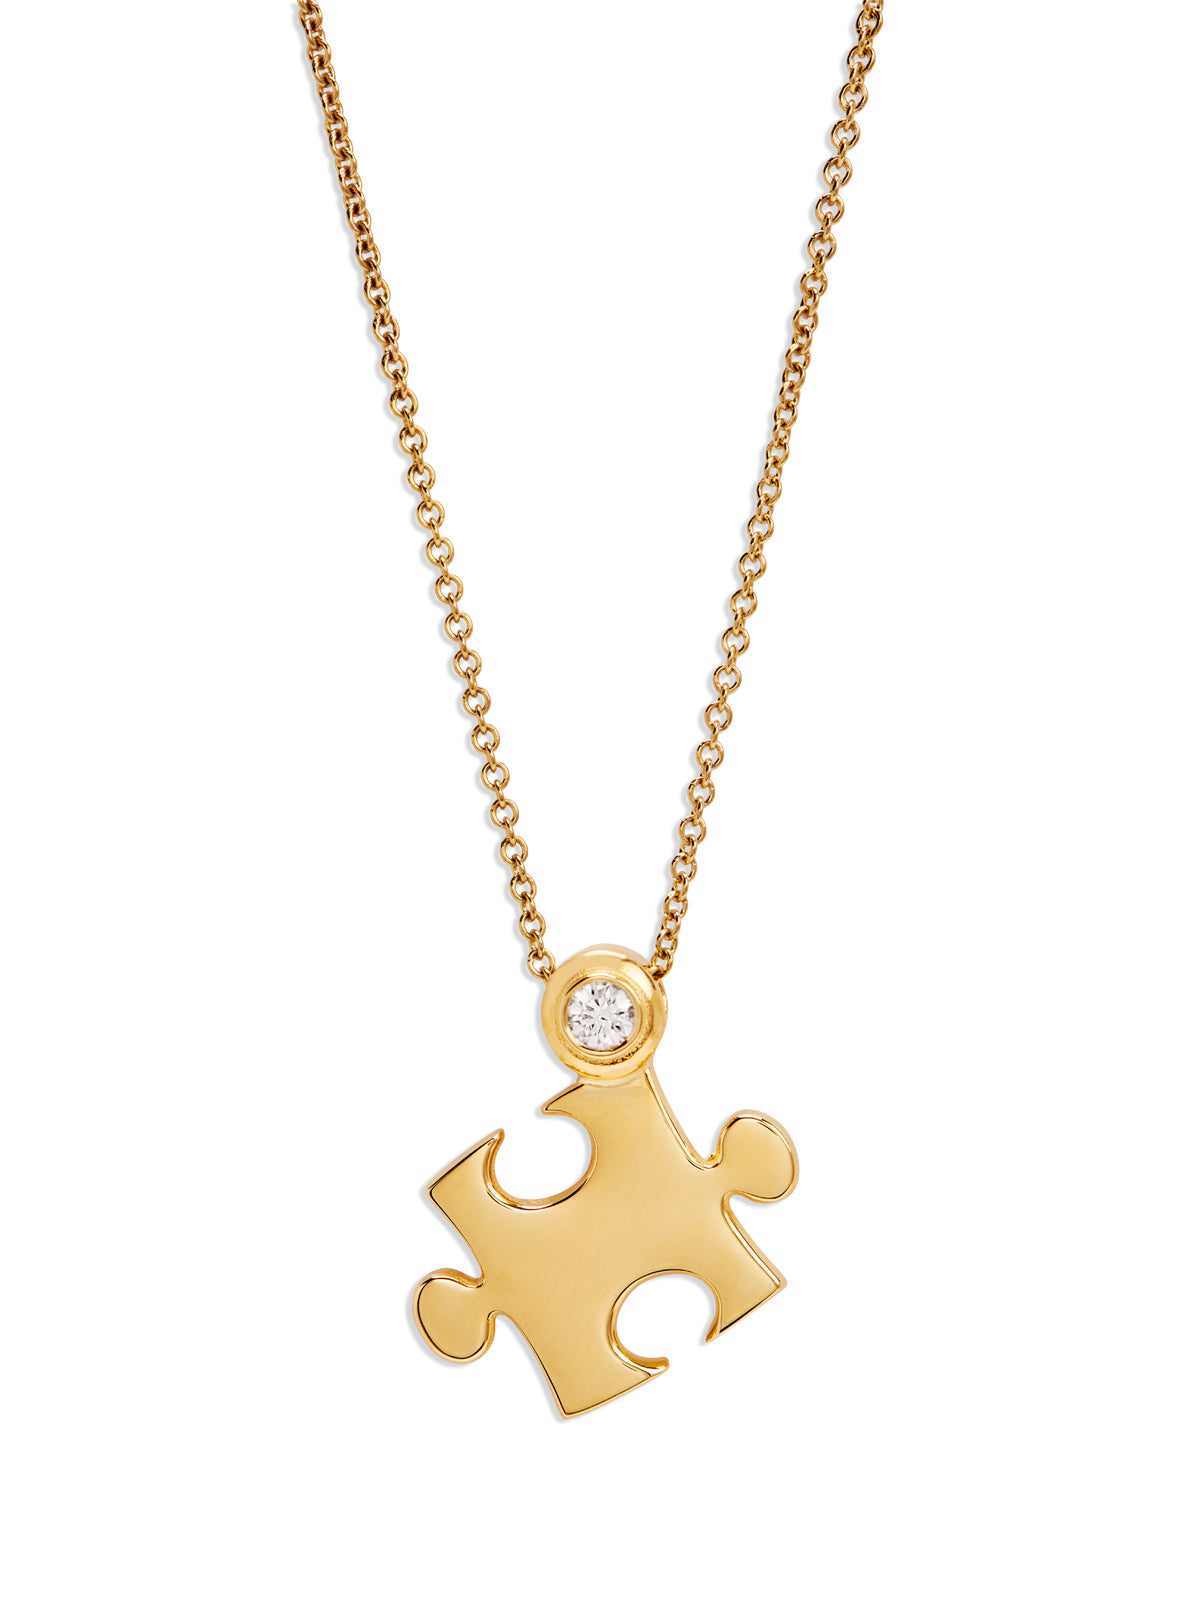 Photos - Pendant / Choker Necklace Mini All Gold Puzzle Pendant Necklace, 16